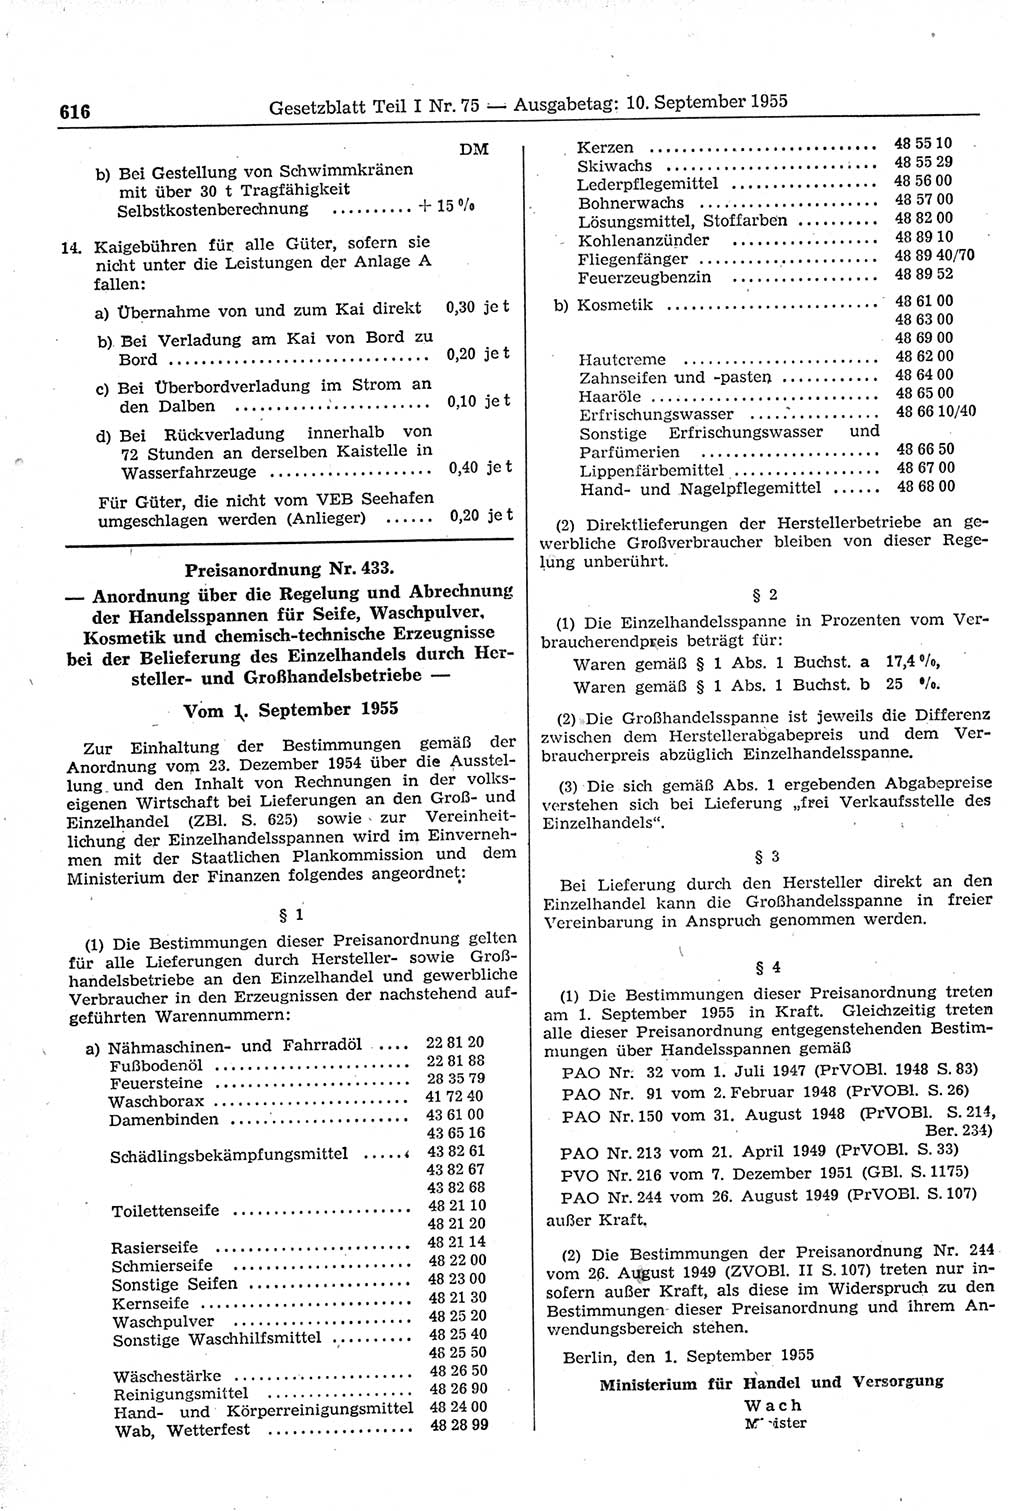 Gesetzblatt (GBl.) der Deutschen Demokratischen Republik (DDR) Teil Ⅰ 1955, Seite 616 (GBl. DDR Ⅰ 1955, S. 616)